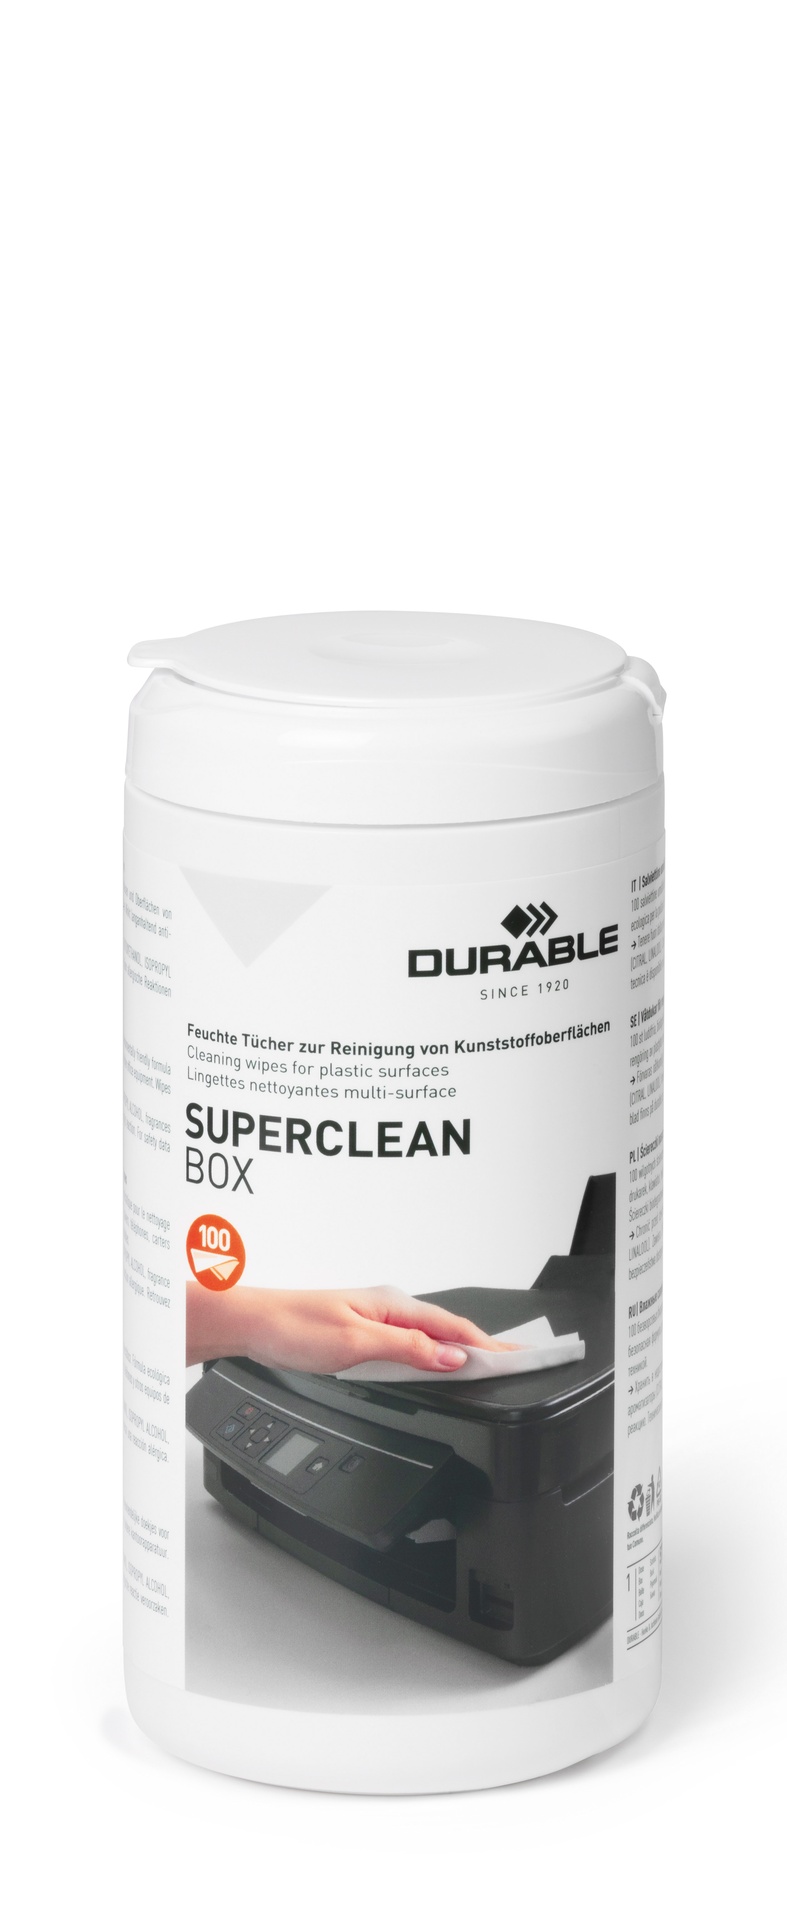 [8564448] Superclean box